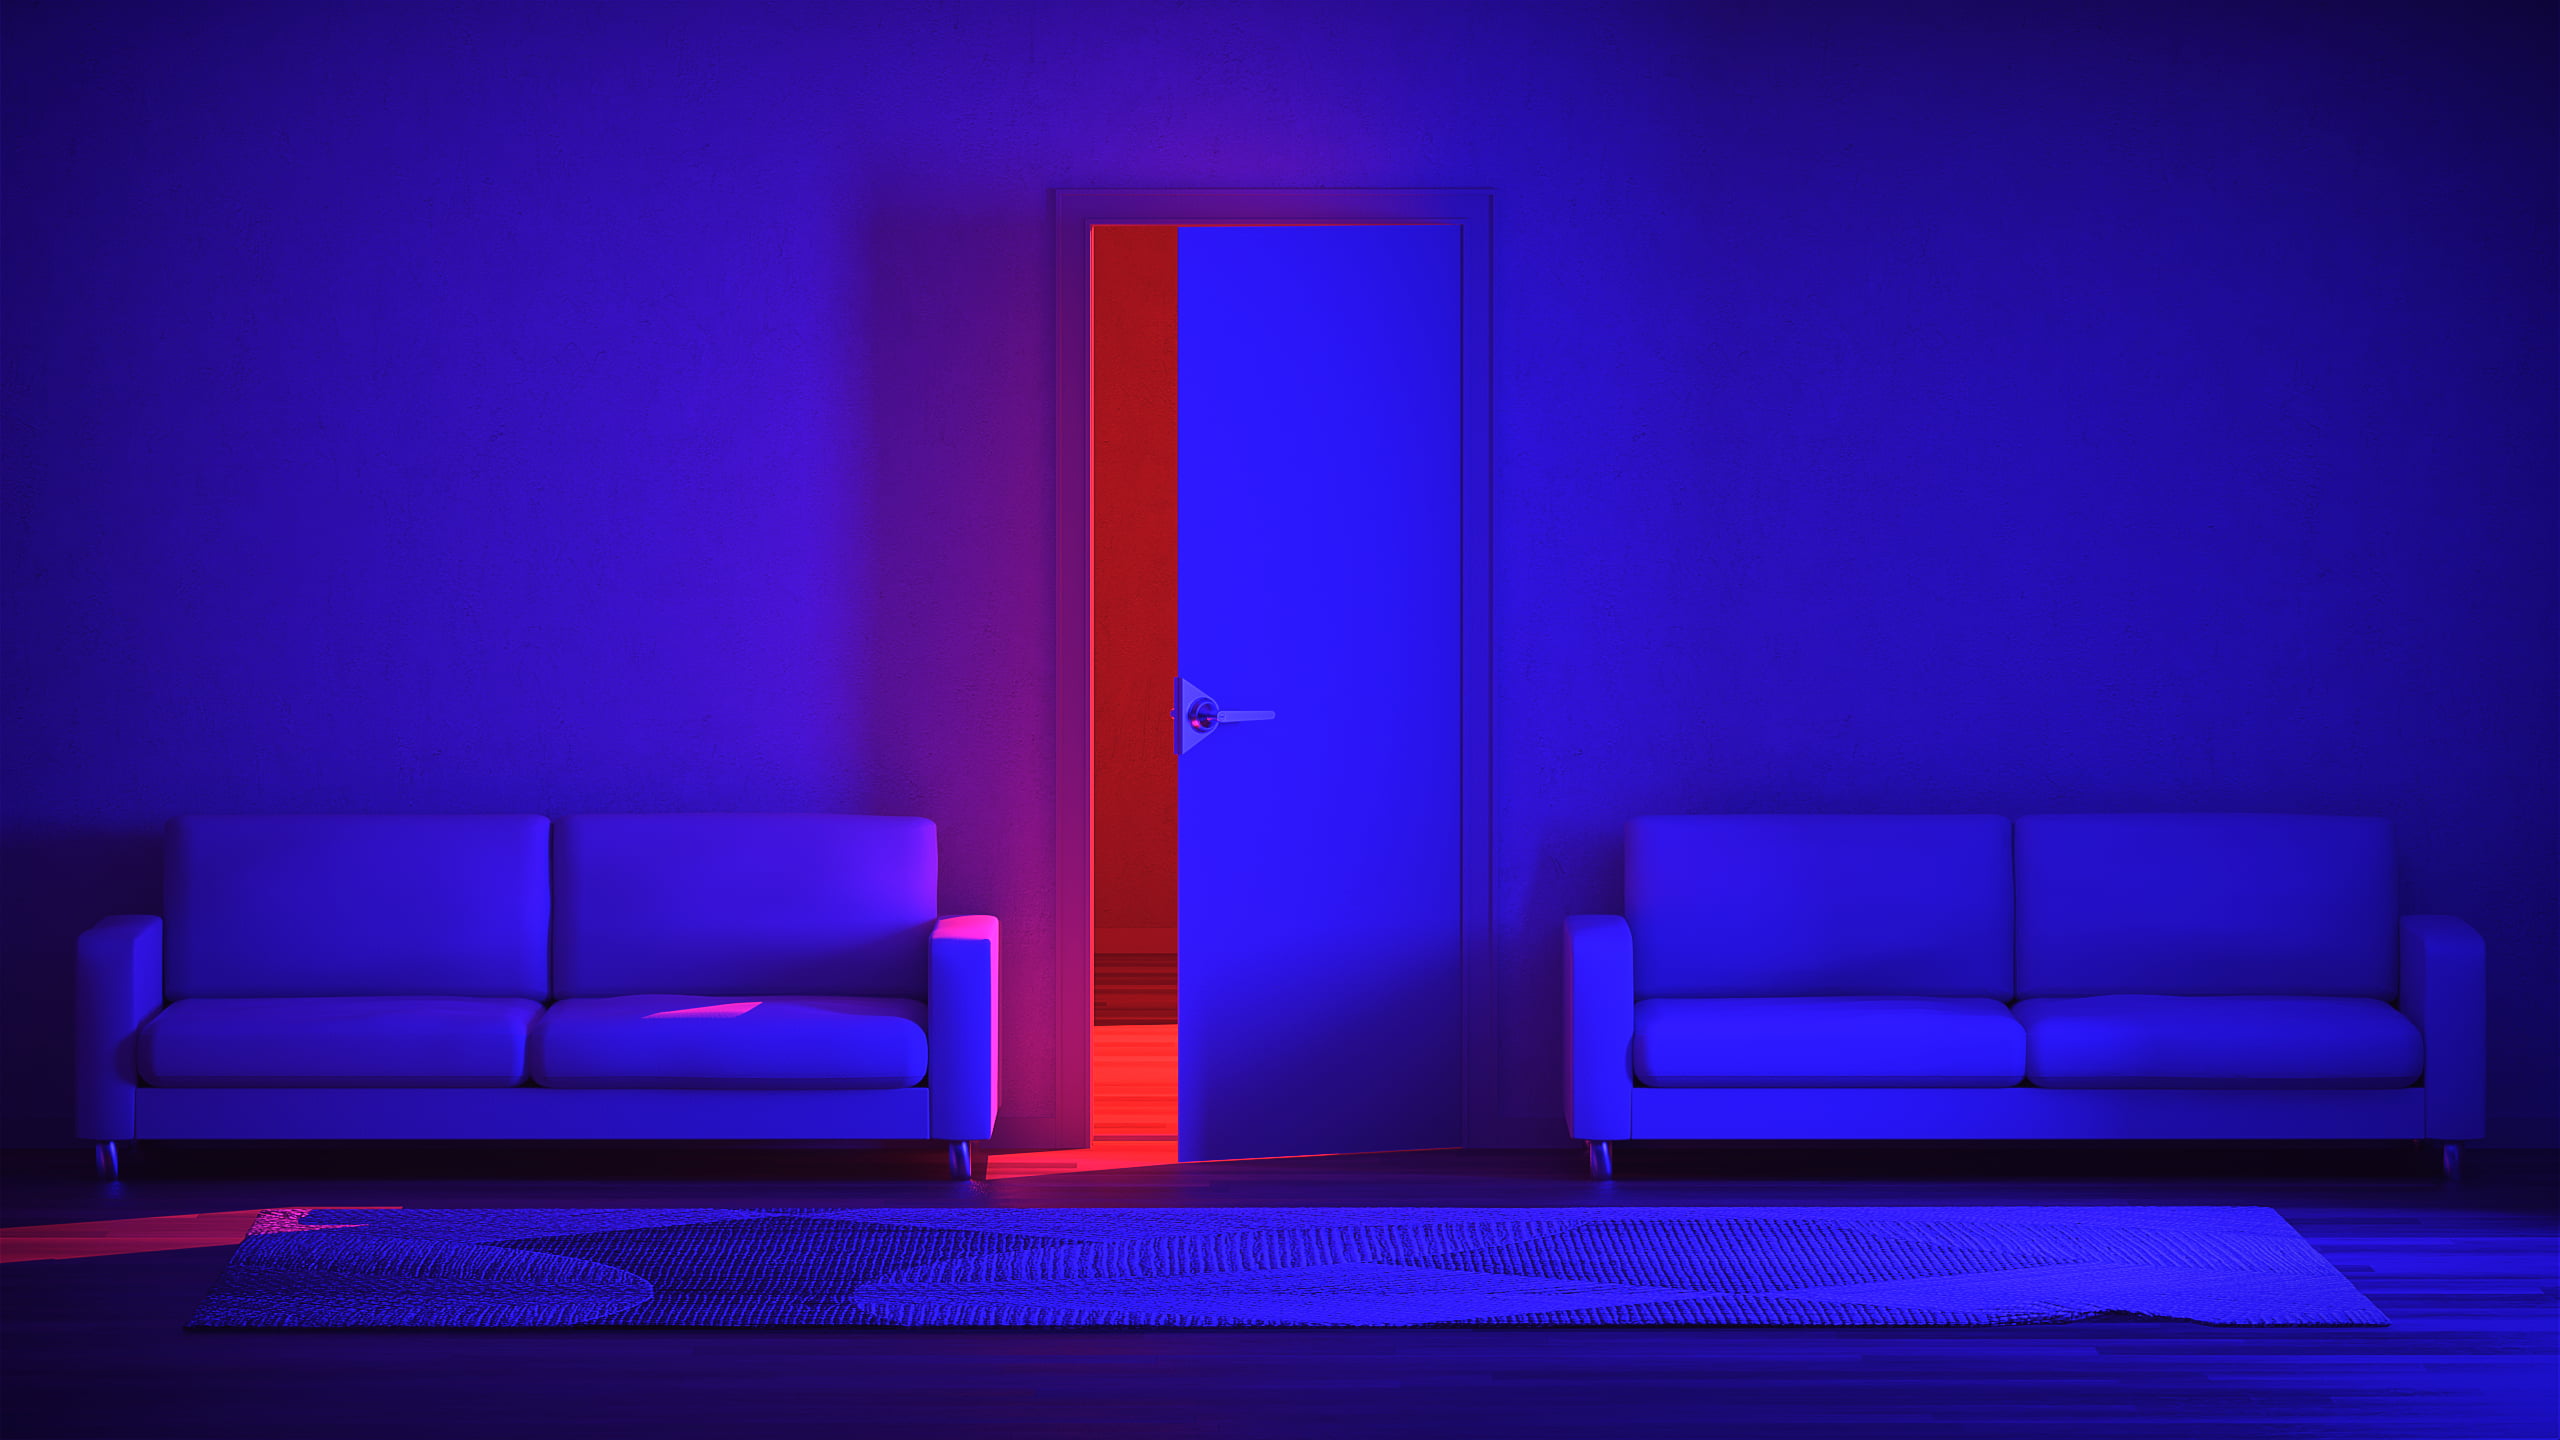 neon, neon lights, CGI, digital art, render, red, blue, door